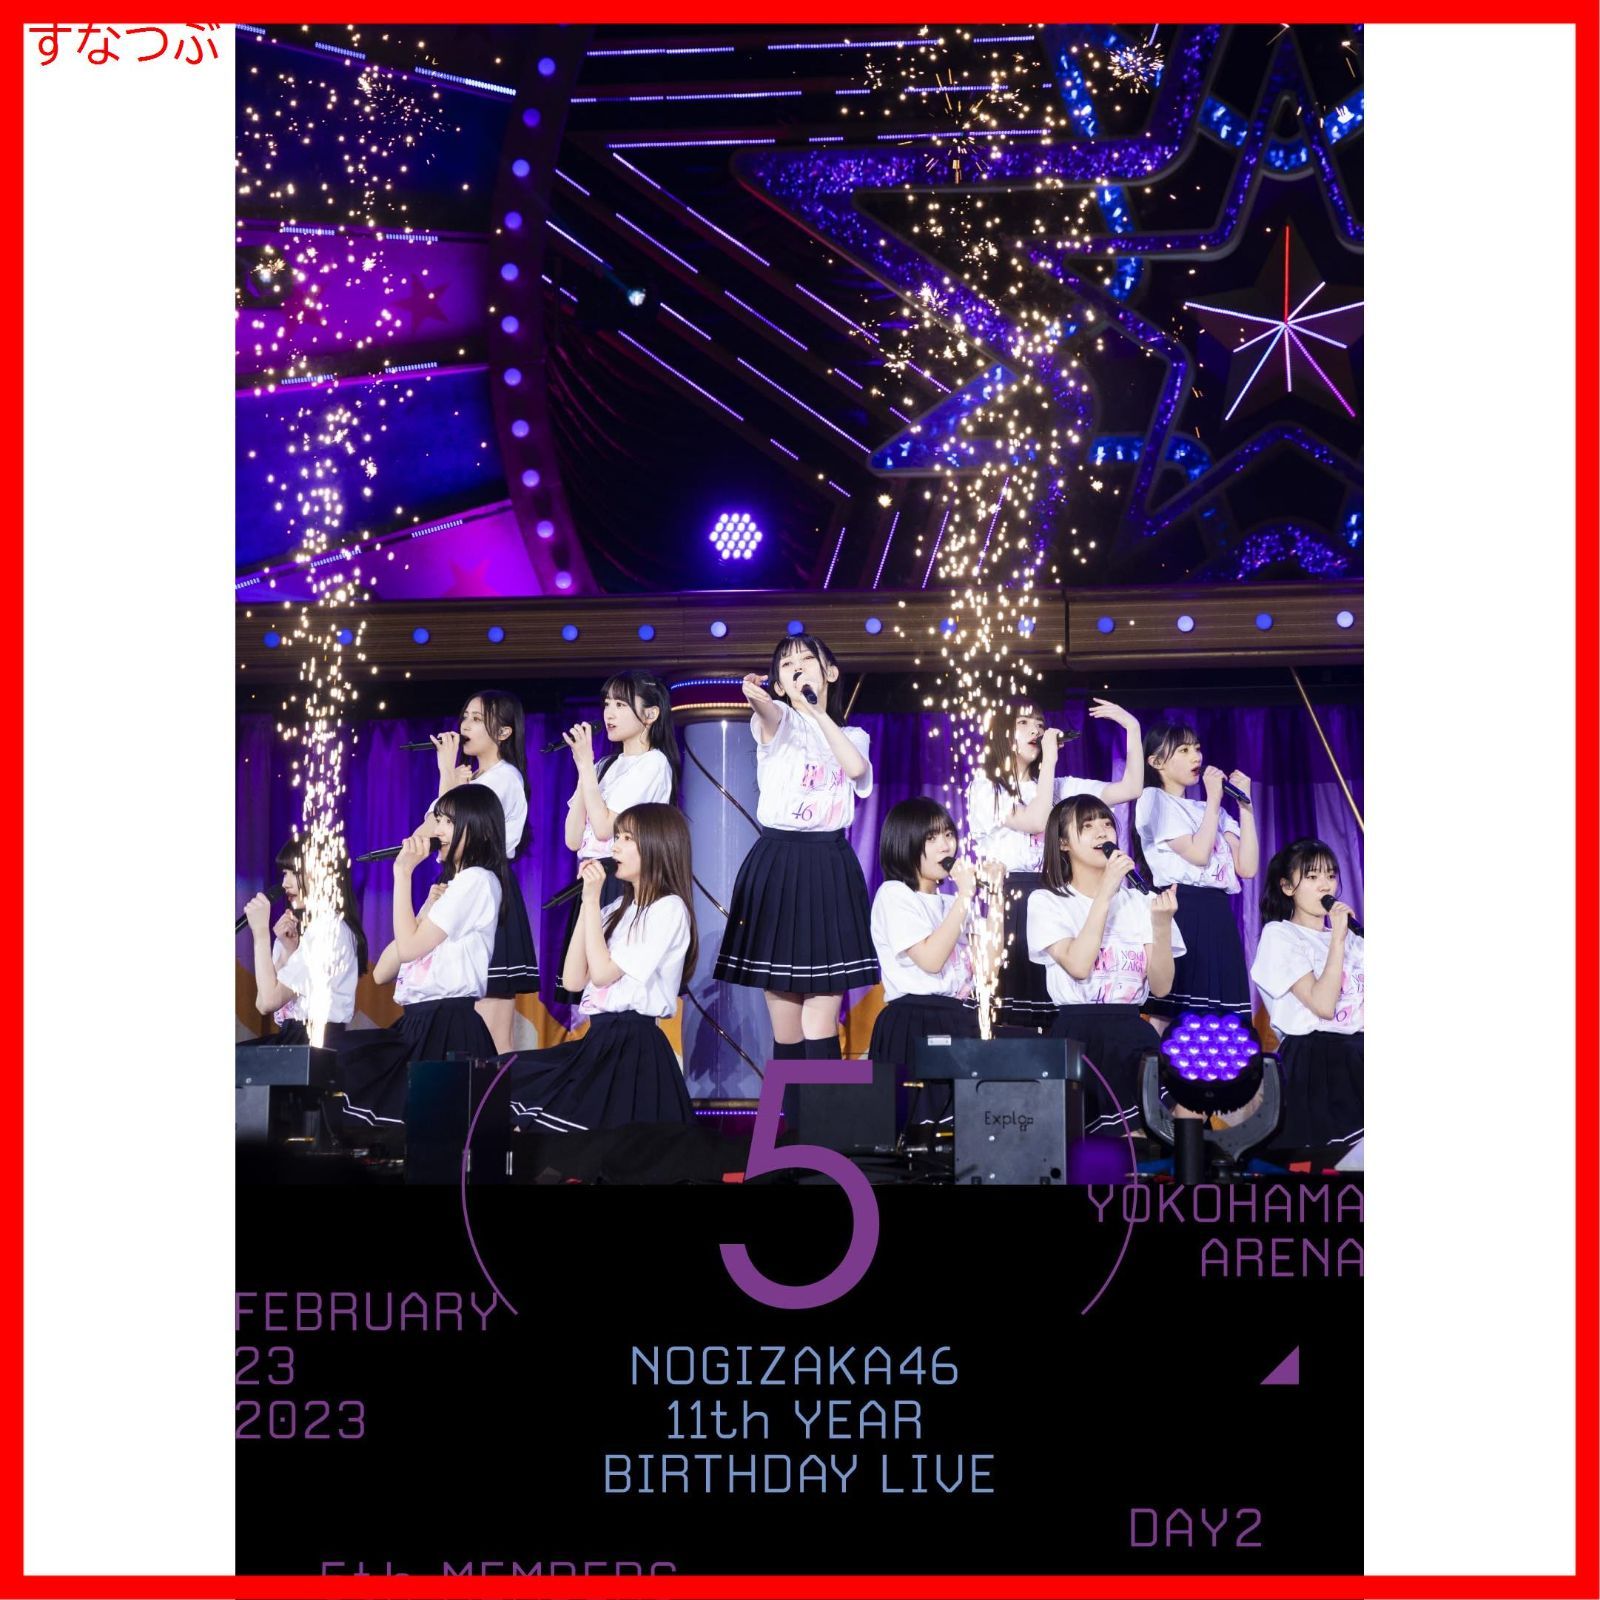 新品未開封】11th YEAR BIRTHDAY LIVE DAY2 5th MEMBERS (Blu-ray) (通常盤) 乃木坂46 (出演)  形式: Blu-ray - メルカリ